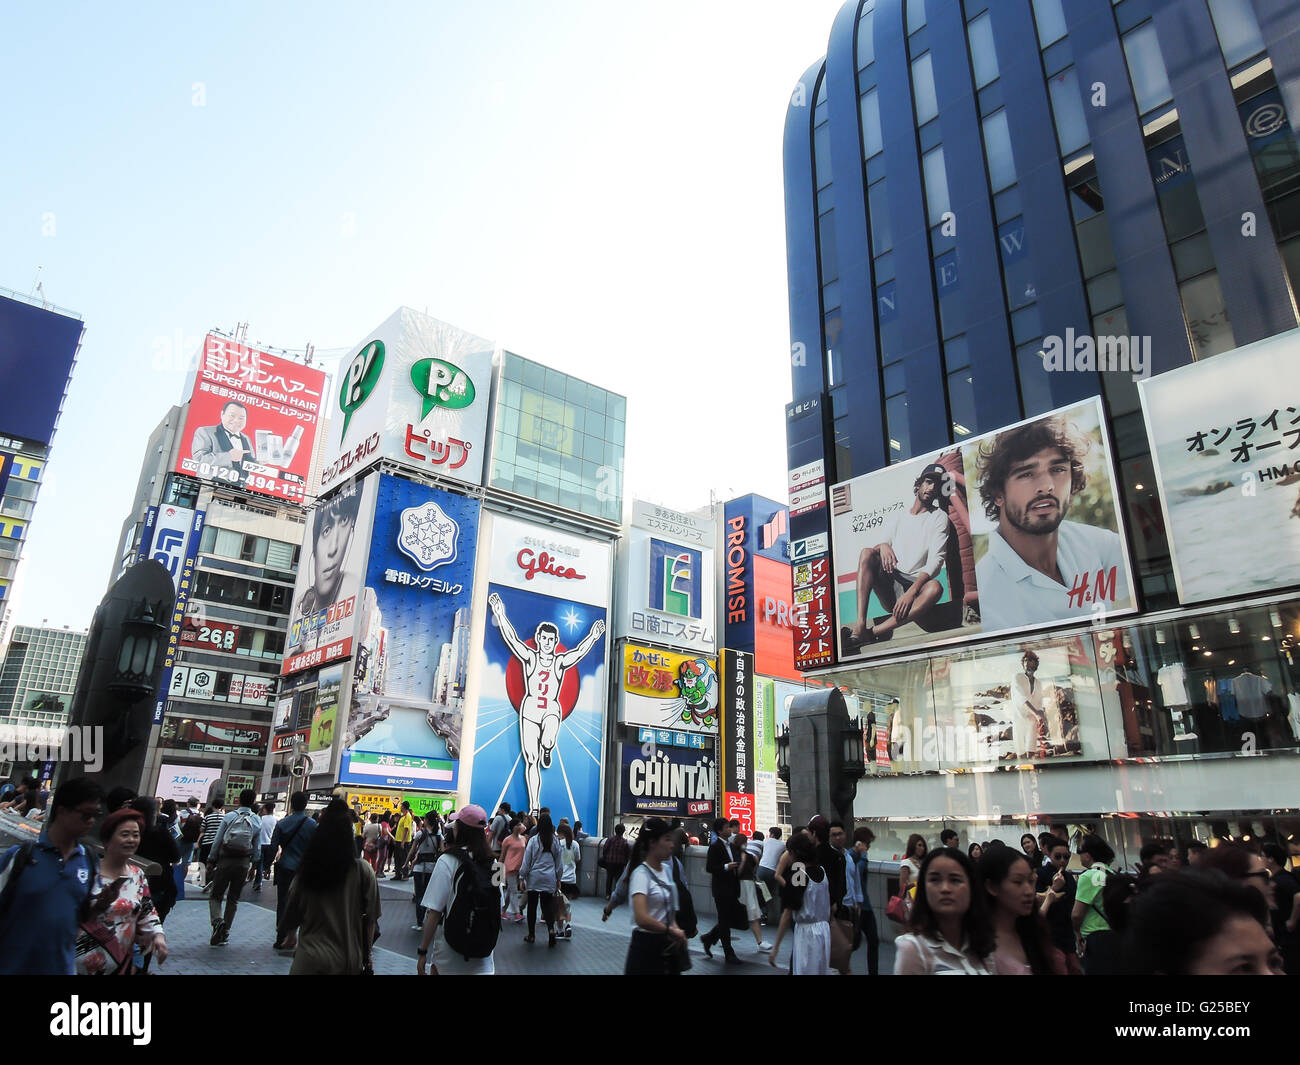 OSAKA JAPON 20 mai 2016, des voyages touristiques en Osaka la célèbre place du marché pour le shopping au Japon Osaka JAPON 20 mai Banque D'Images